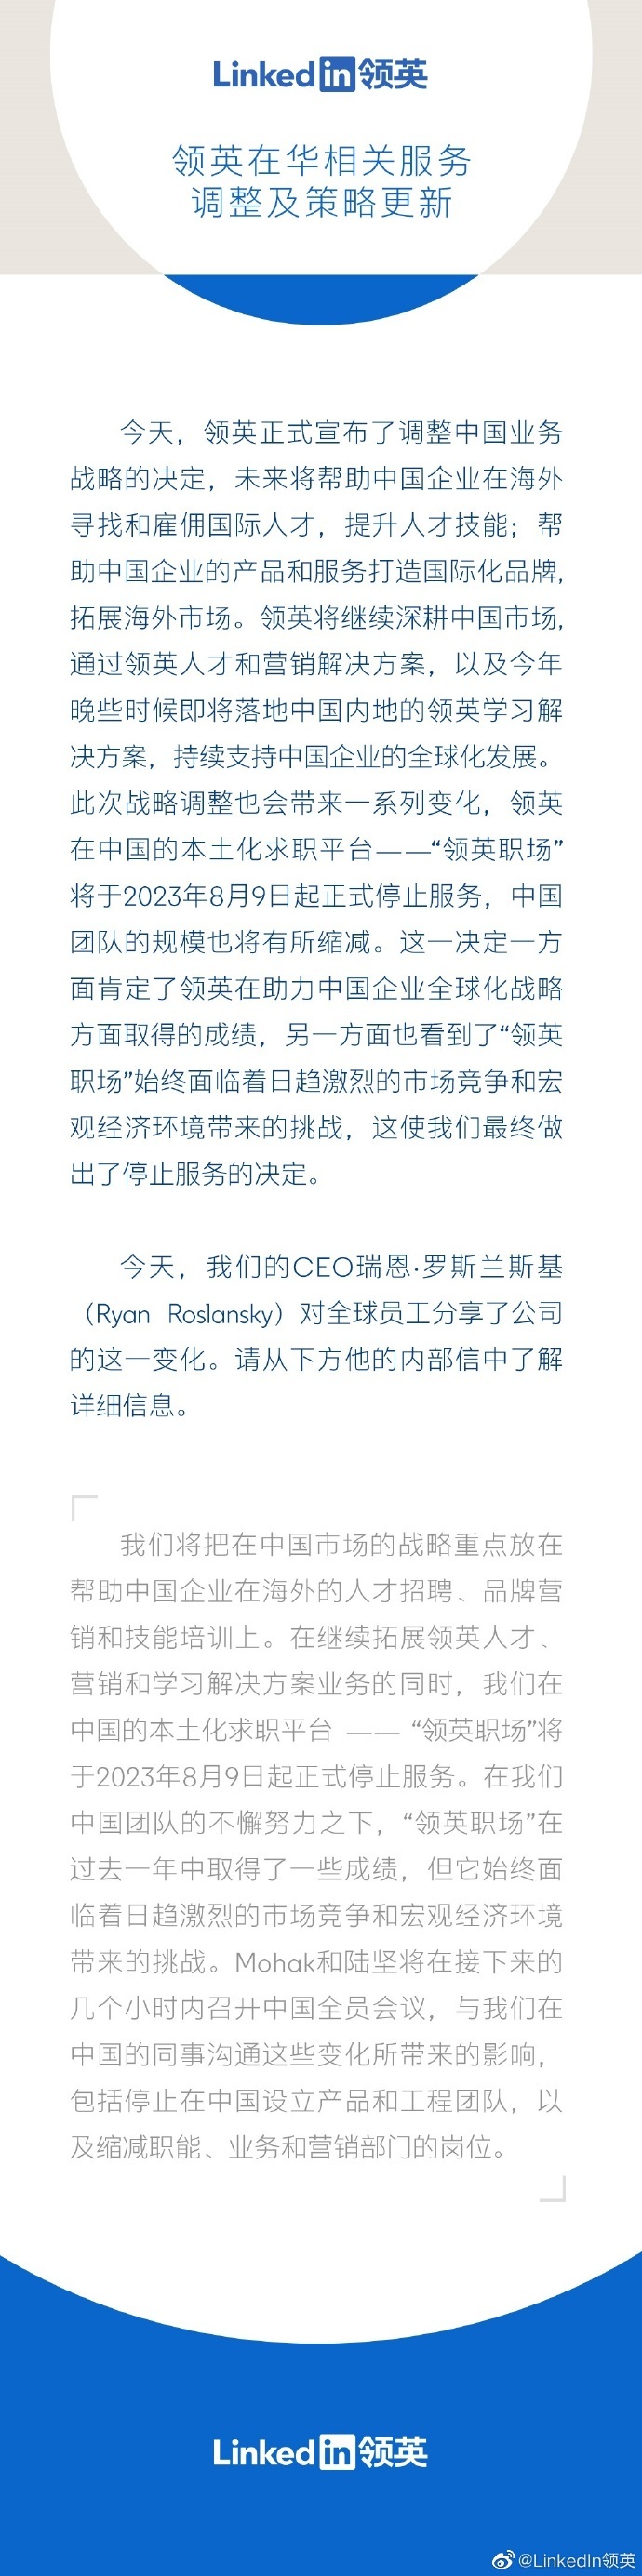 领英宣布中国本土化应用“领英职场”将关停  不再为国内C端用户提供服务